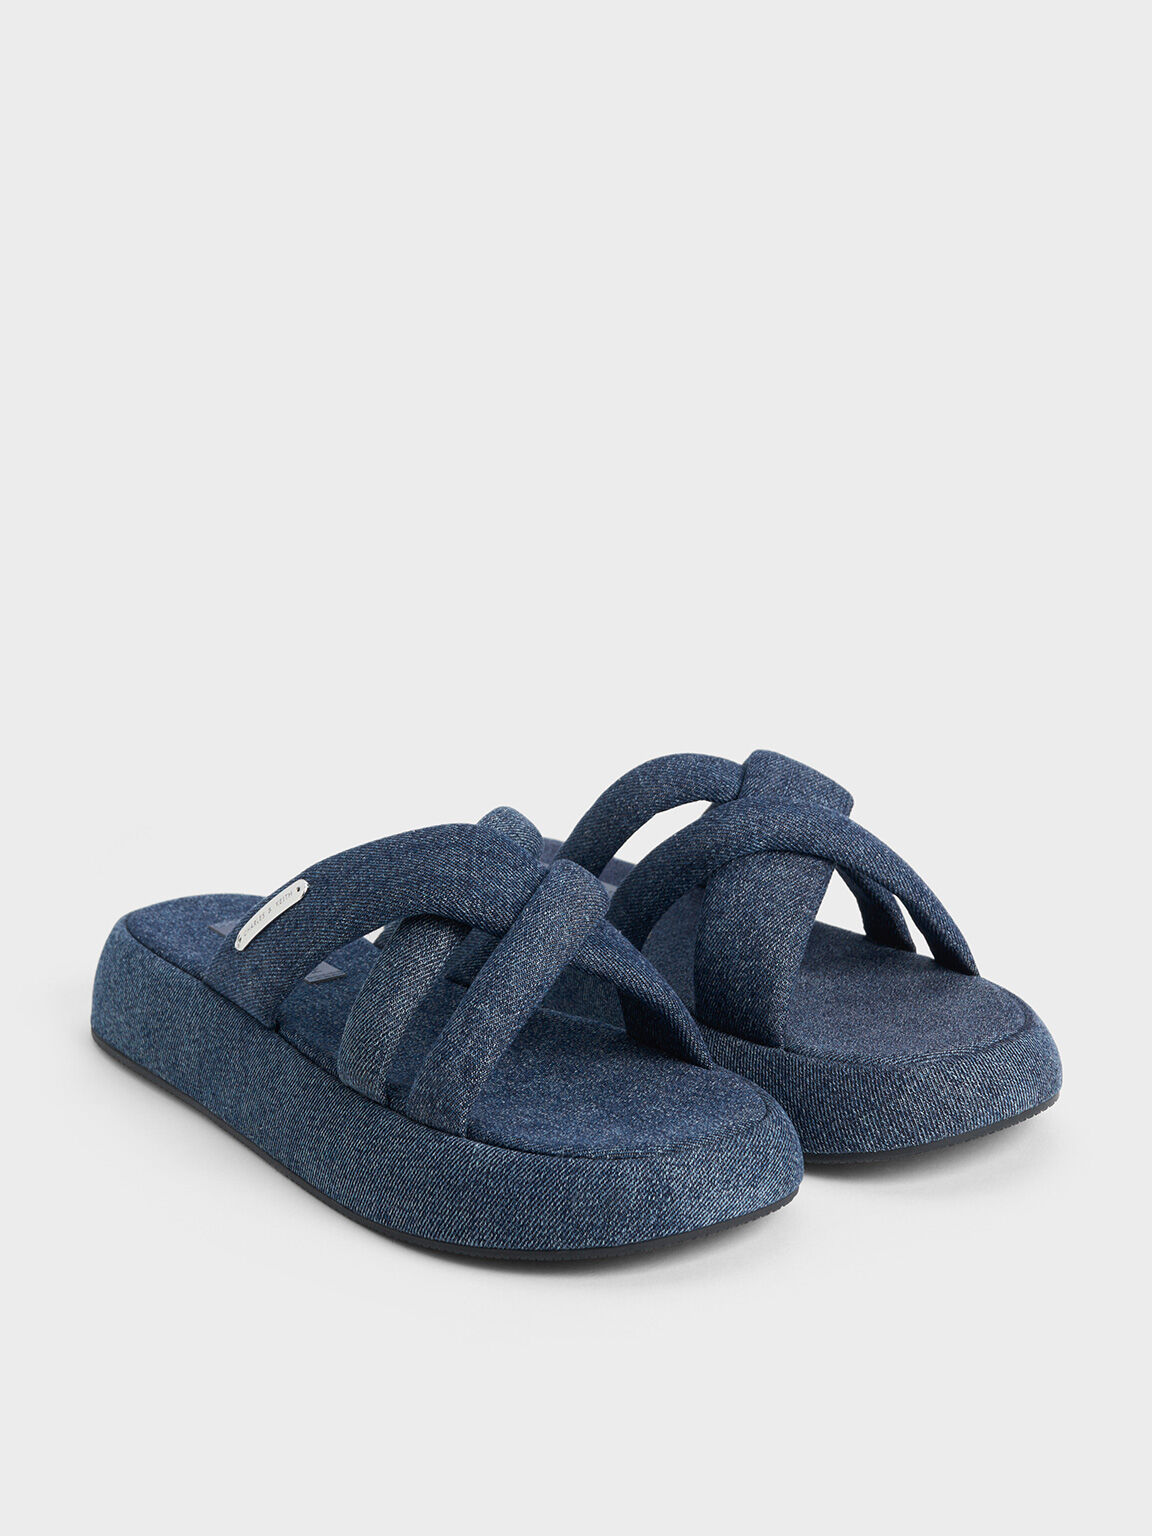 Denim Puffy Crossover-Strap Slide Sandals, Denim Blue, hi-res